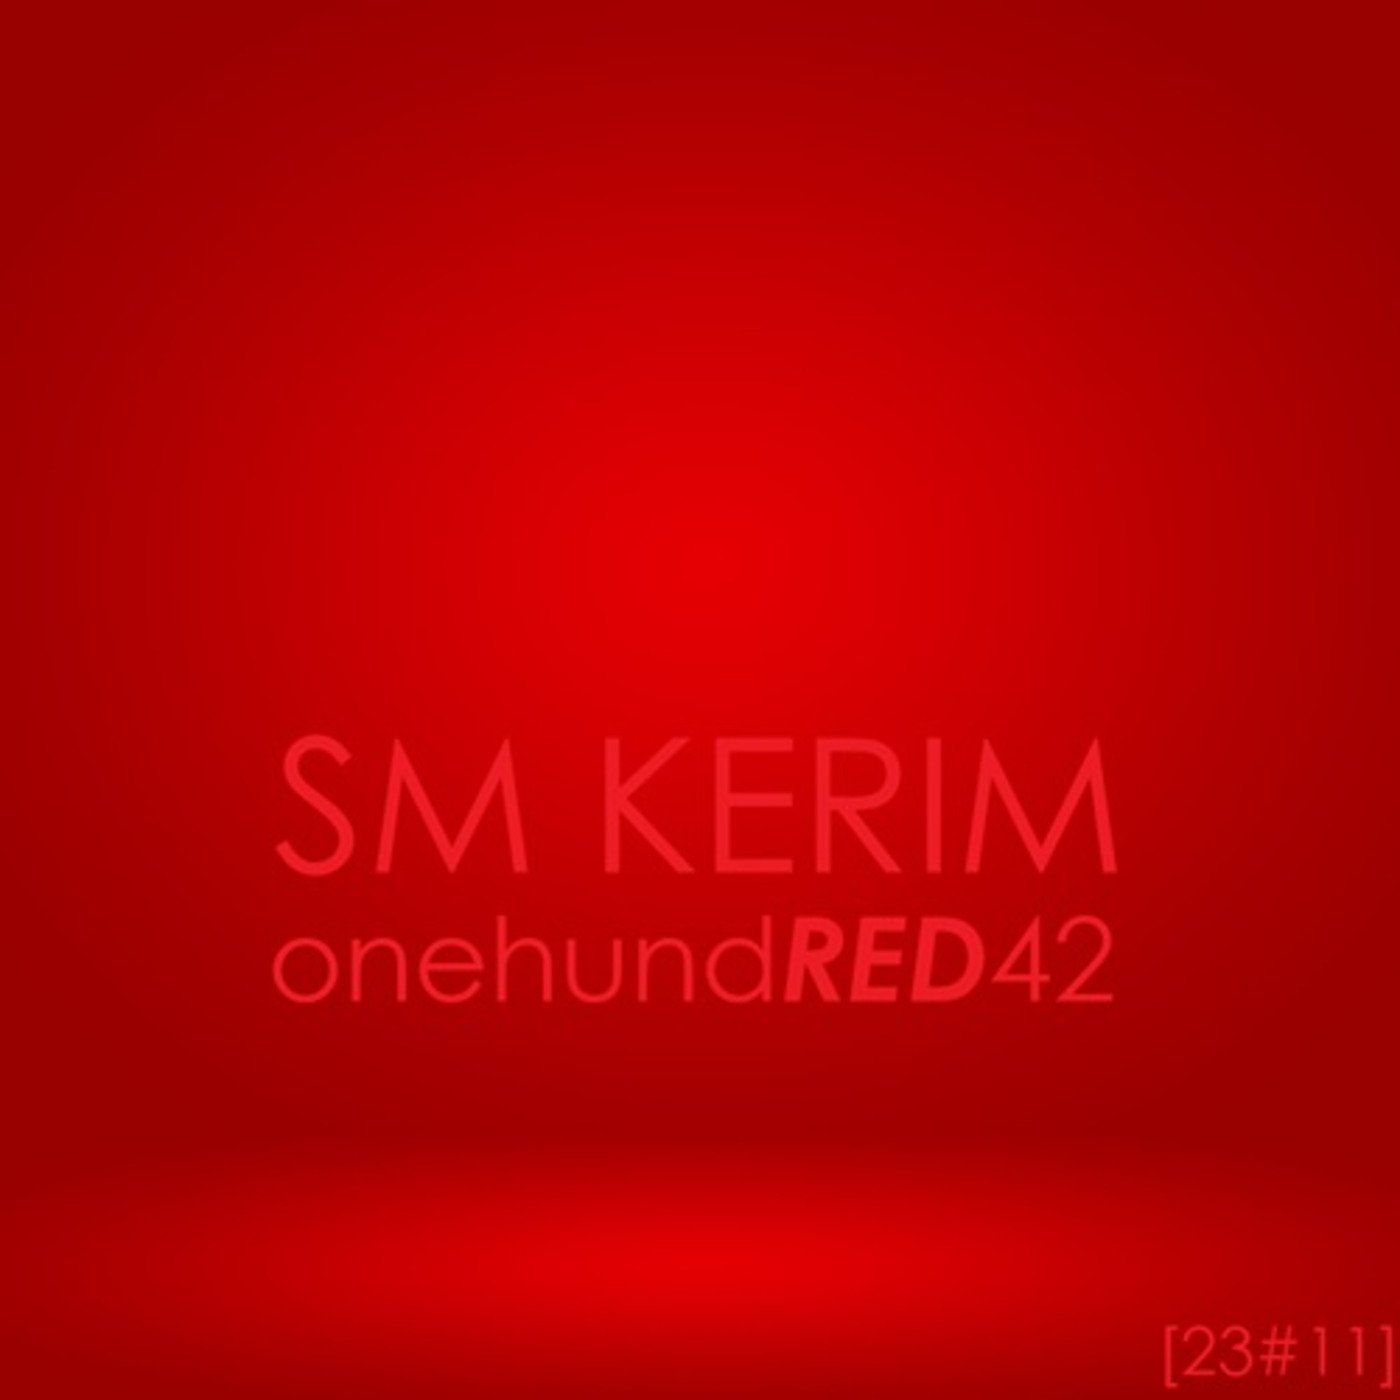 SM KERIM - onehundRED42 (23#11)